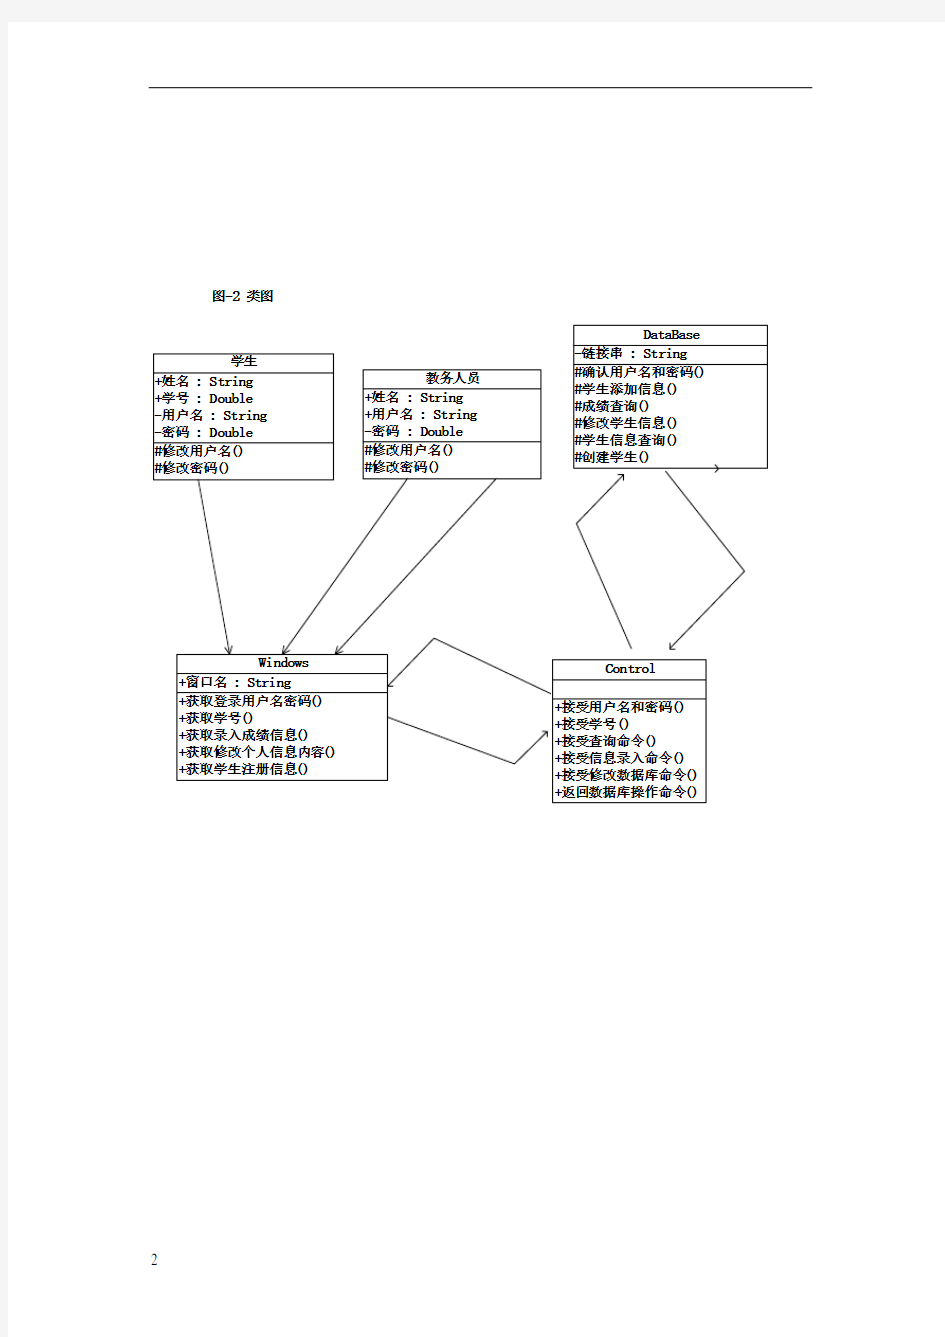 学生档案管理系统UML图